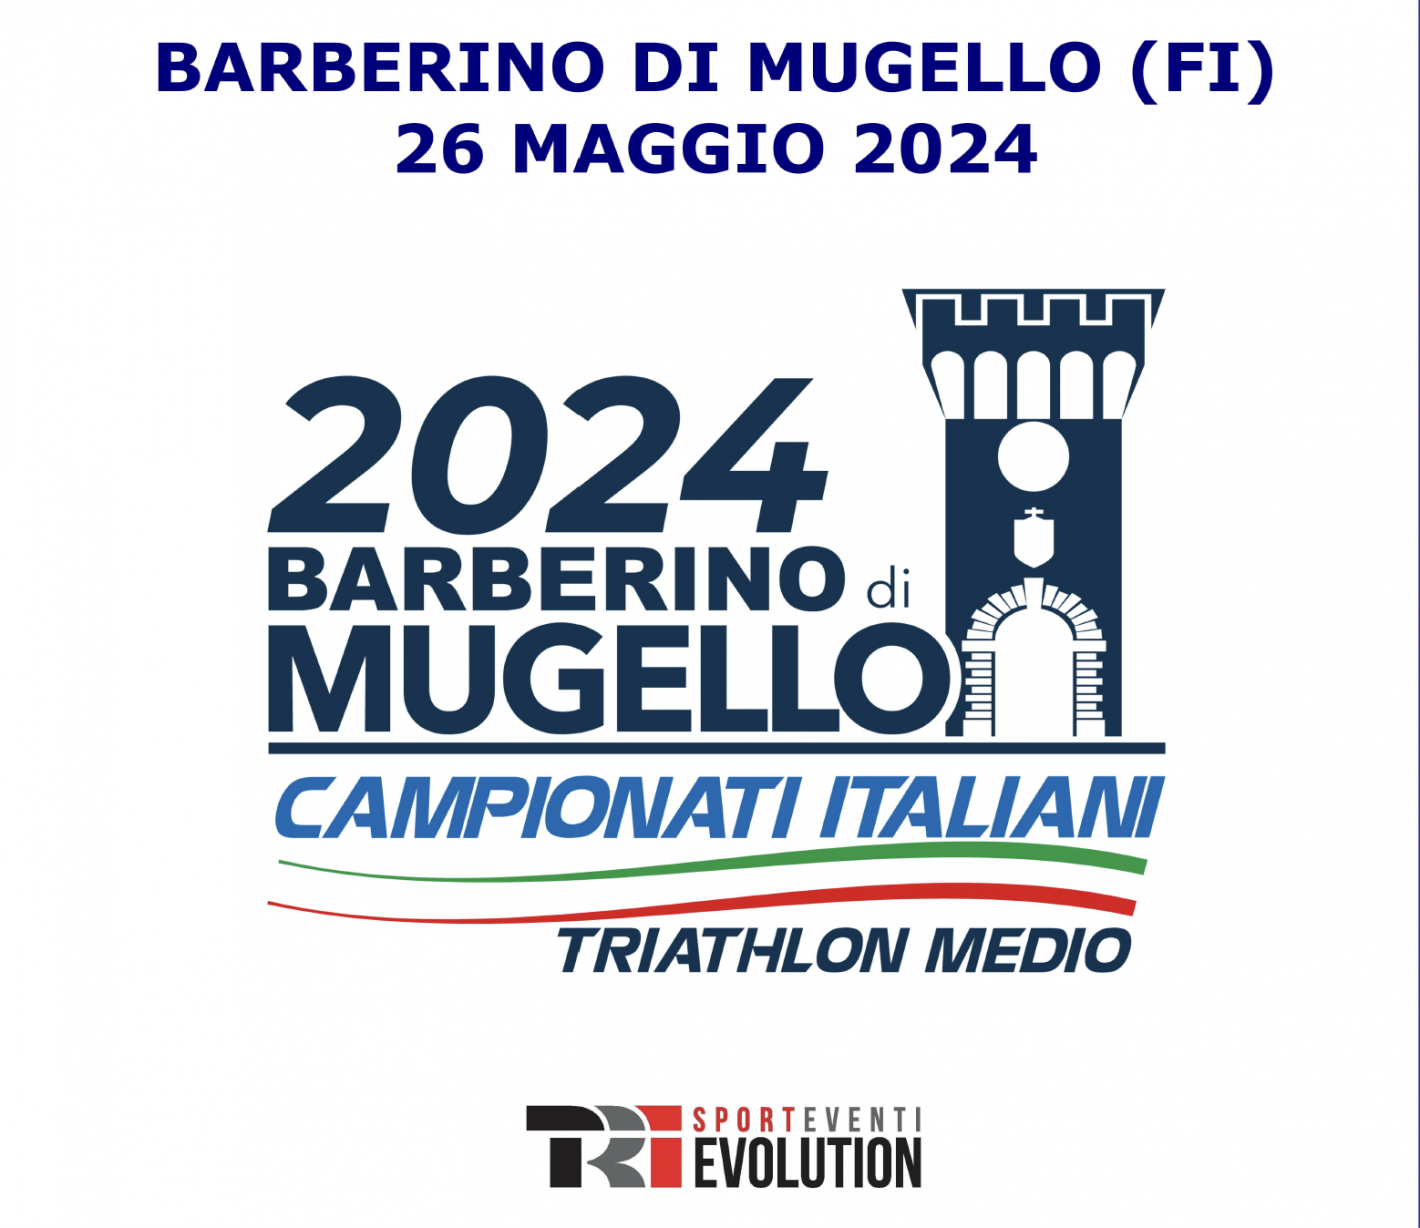 images/2024/Gare_Italia/Campionati_Italiani/Barberino_di_Mugello/medium/barberino_di_mugello.png